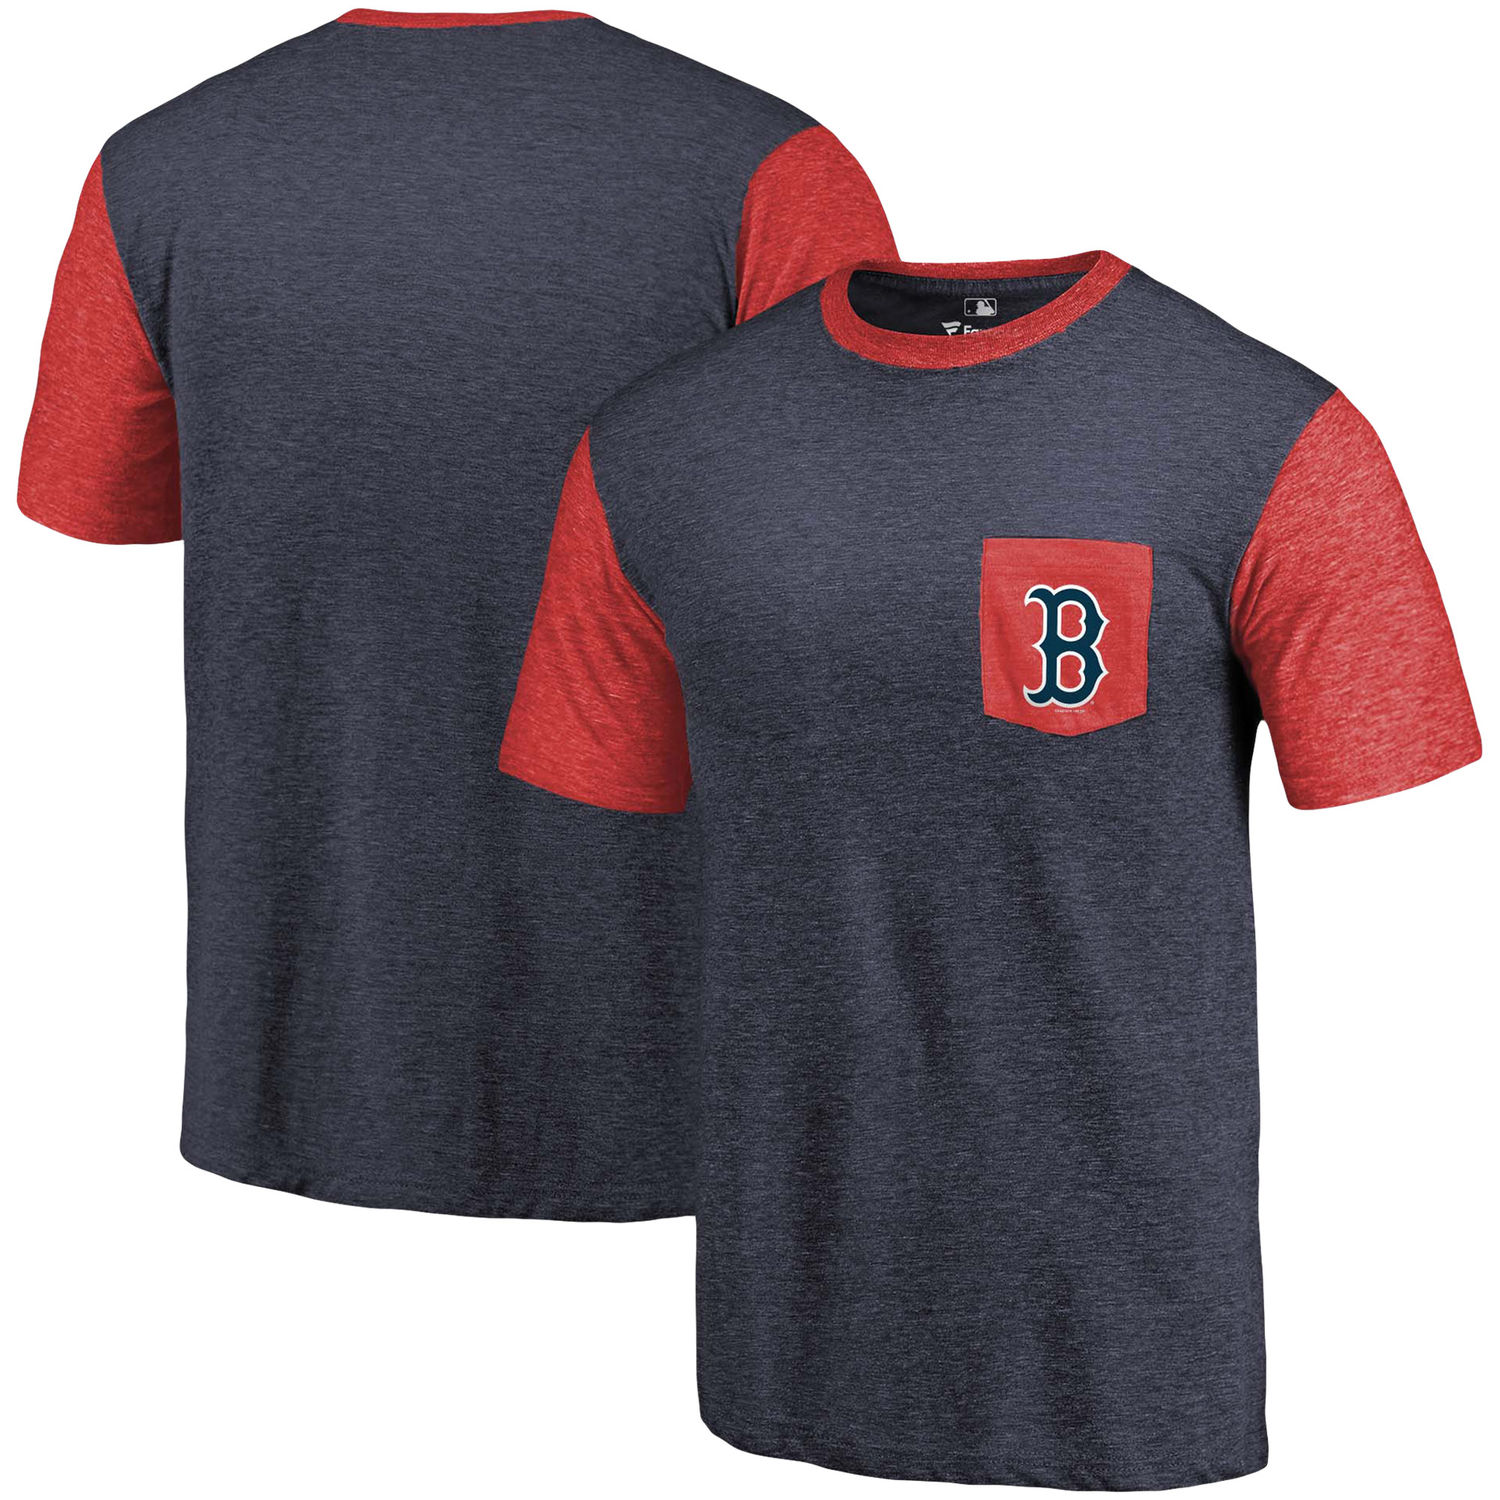 Men's Boston Red Sox Fanatics Branded Navy/Red Refresh Pocket T-Shirt